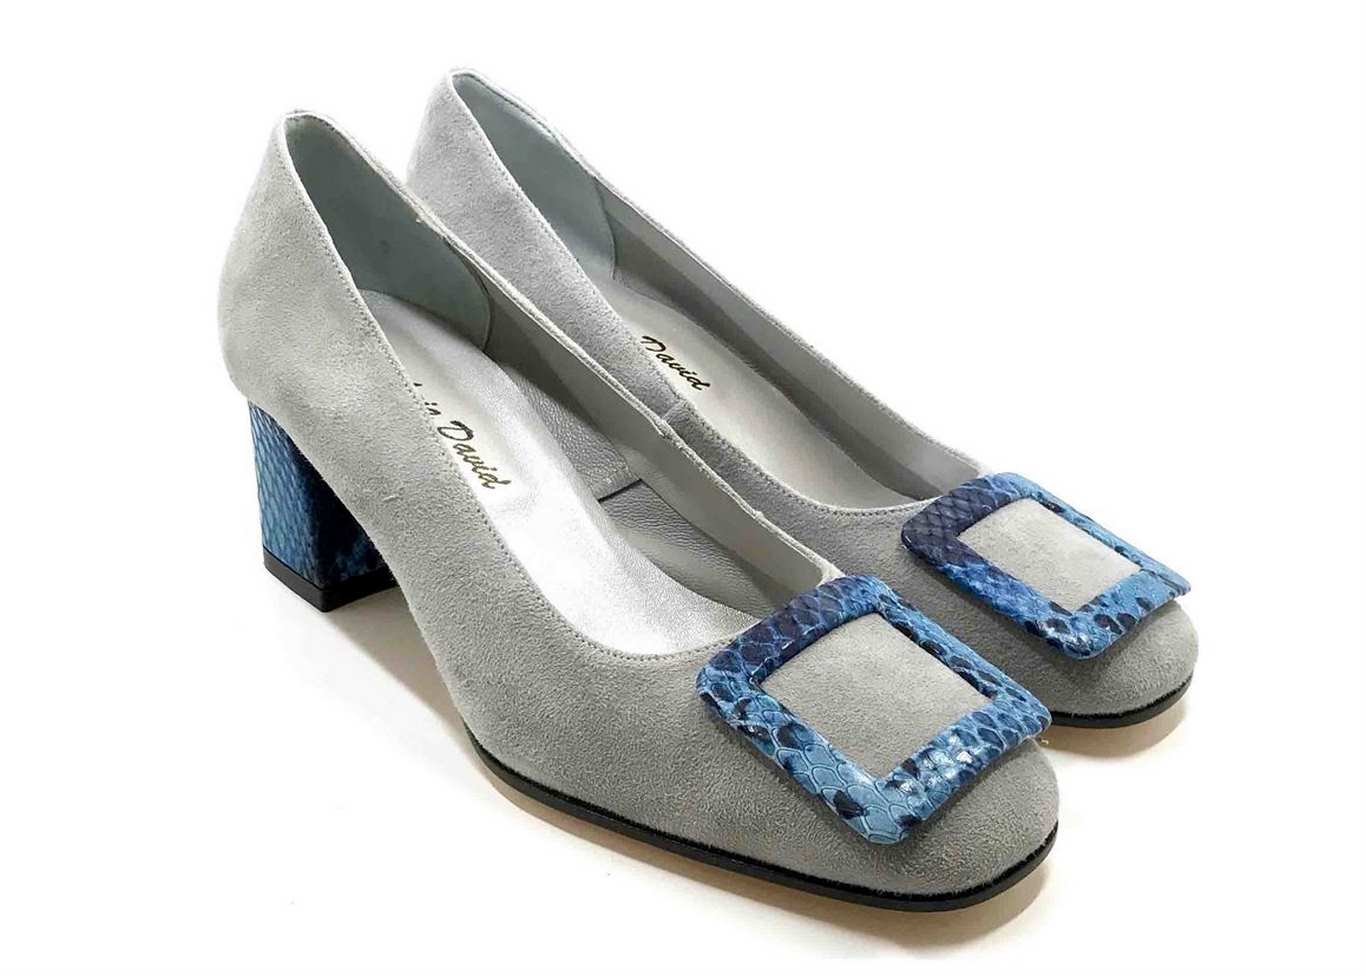 Décolleté Heel 5cm upper in Grey Suede, heel and buckle in printed Blue ...